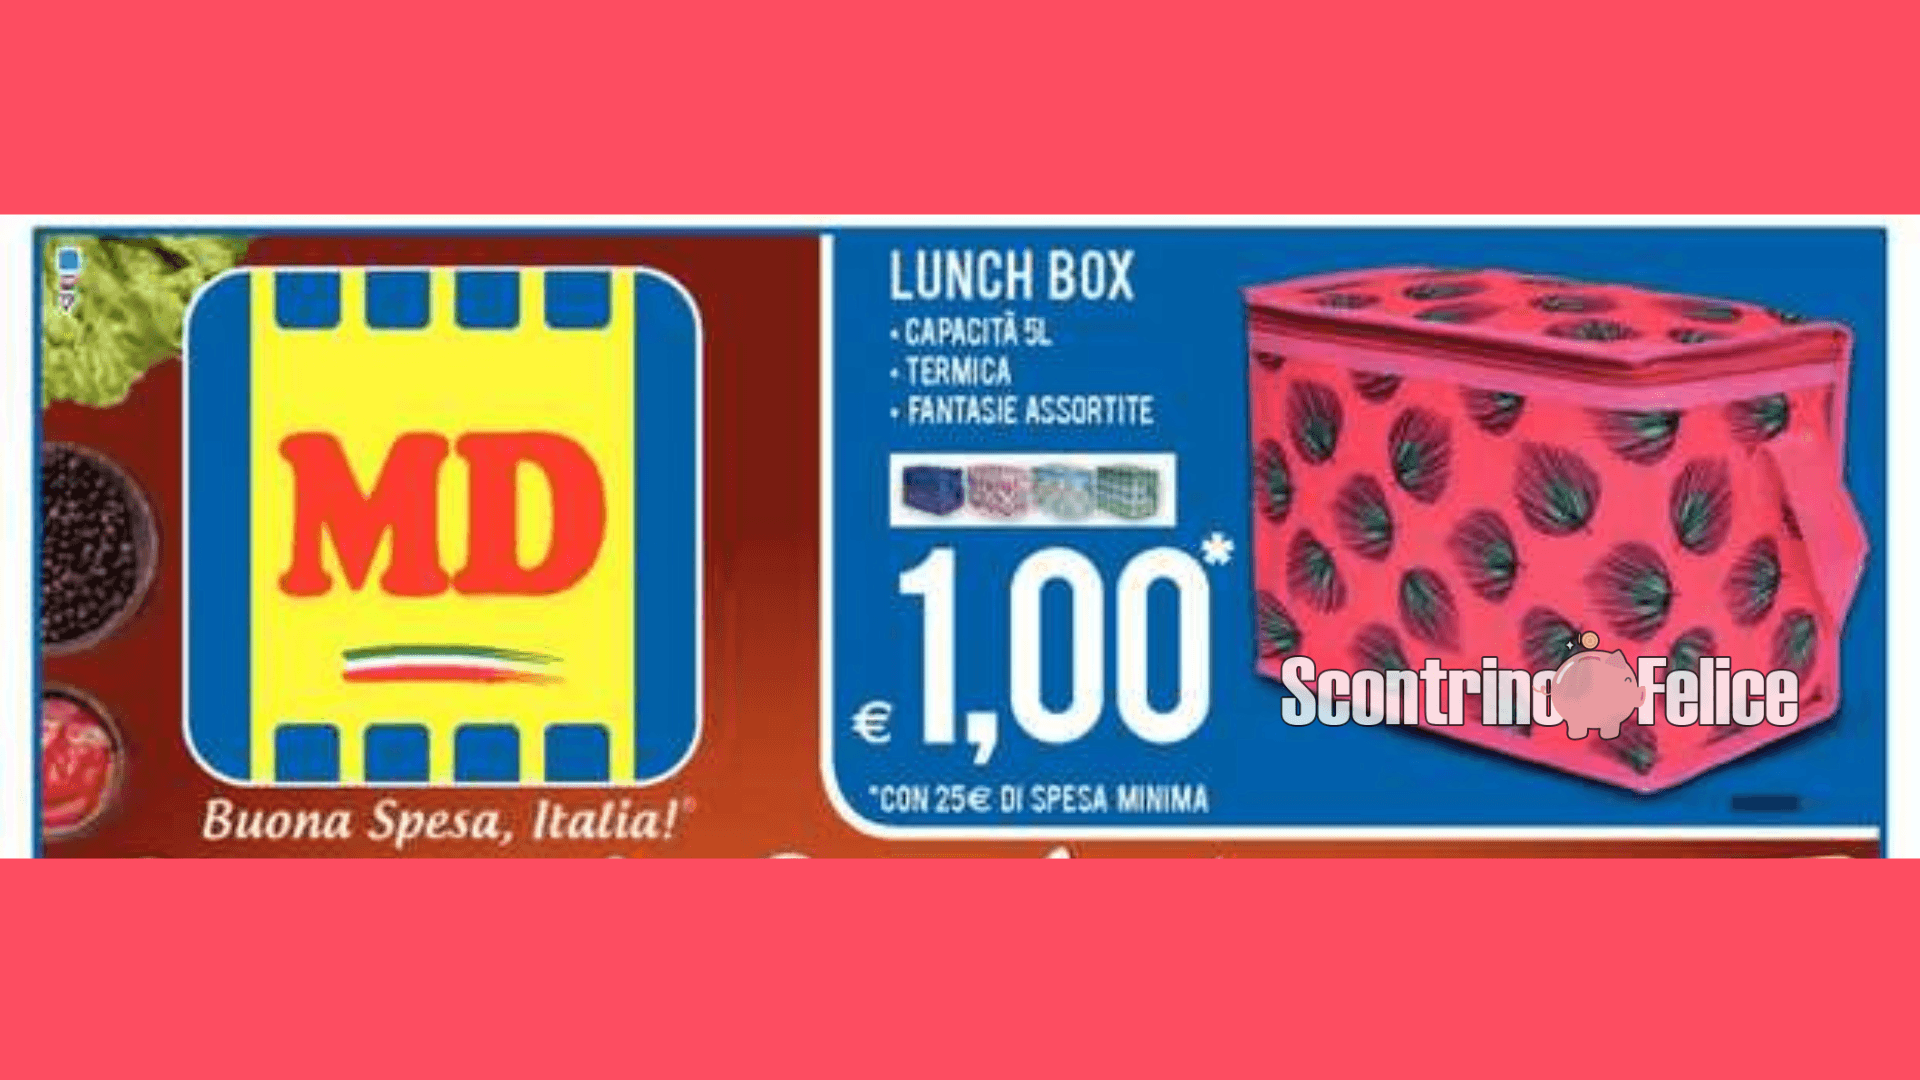 Lunch box a solo 1 euro da MD: scopri come averla! 1